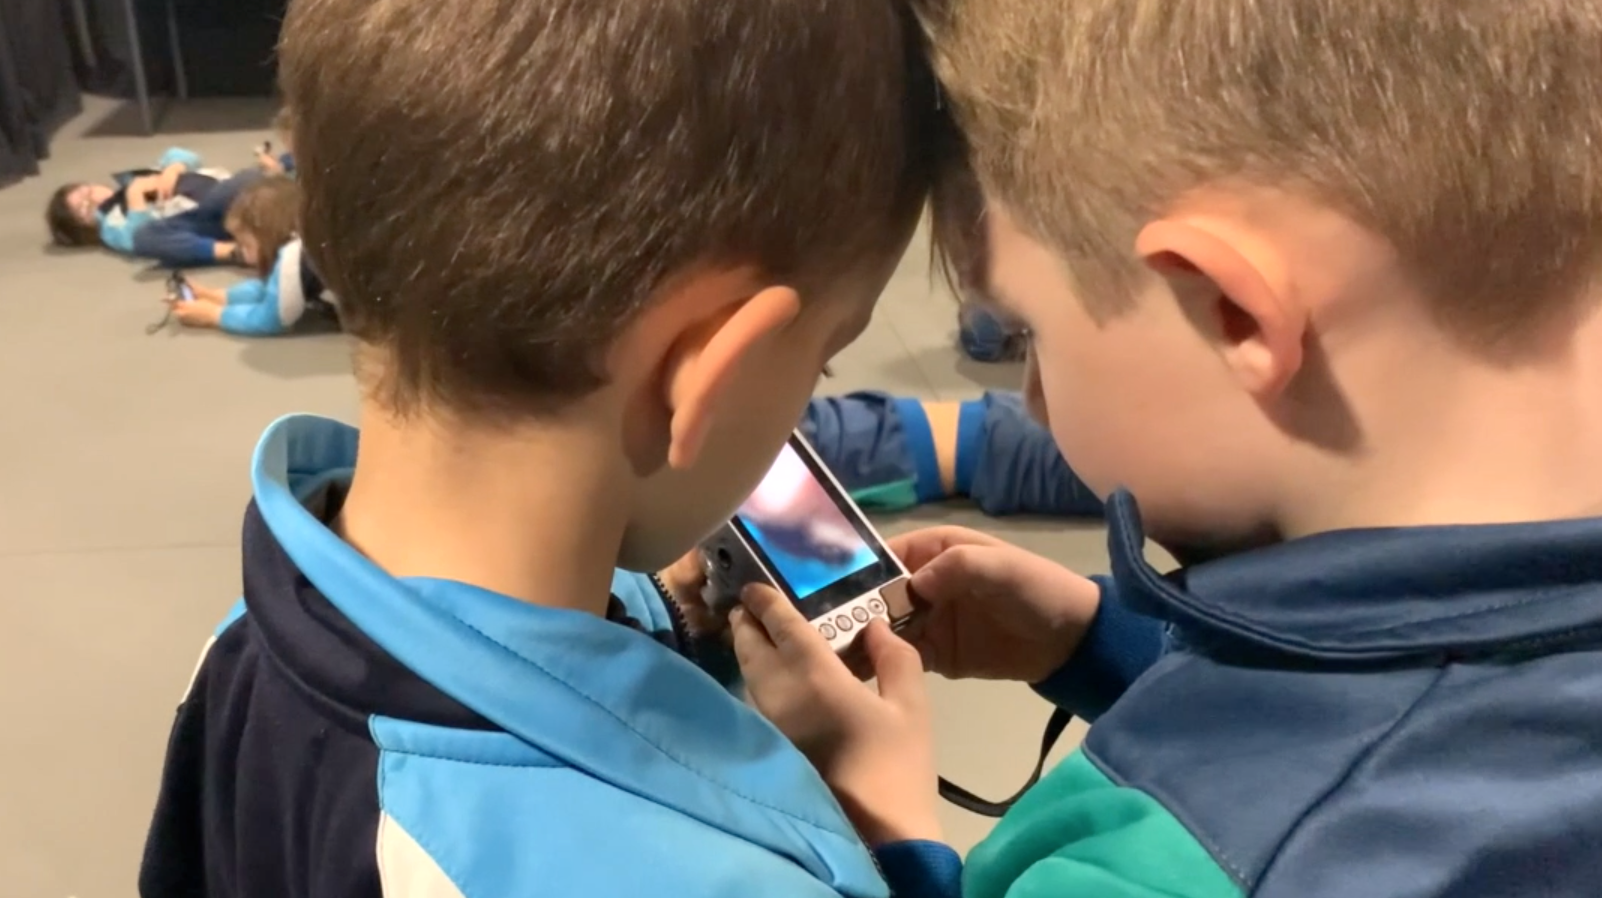 Contaplano de dos niños con las cabezas pegadas mirando juntos la pantalla de una cámara de fotos digital